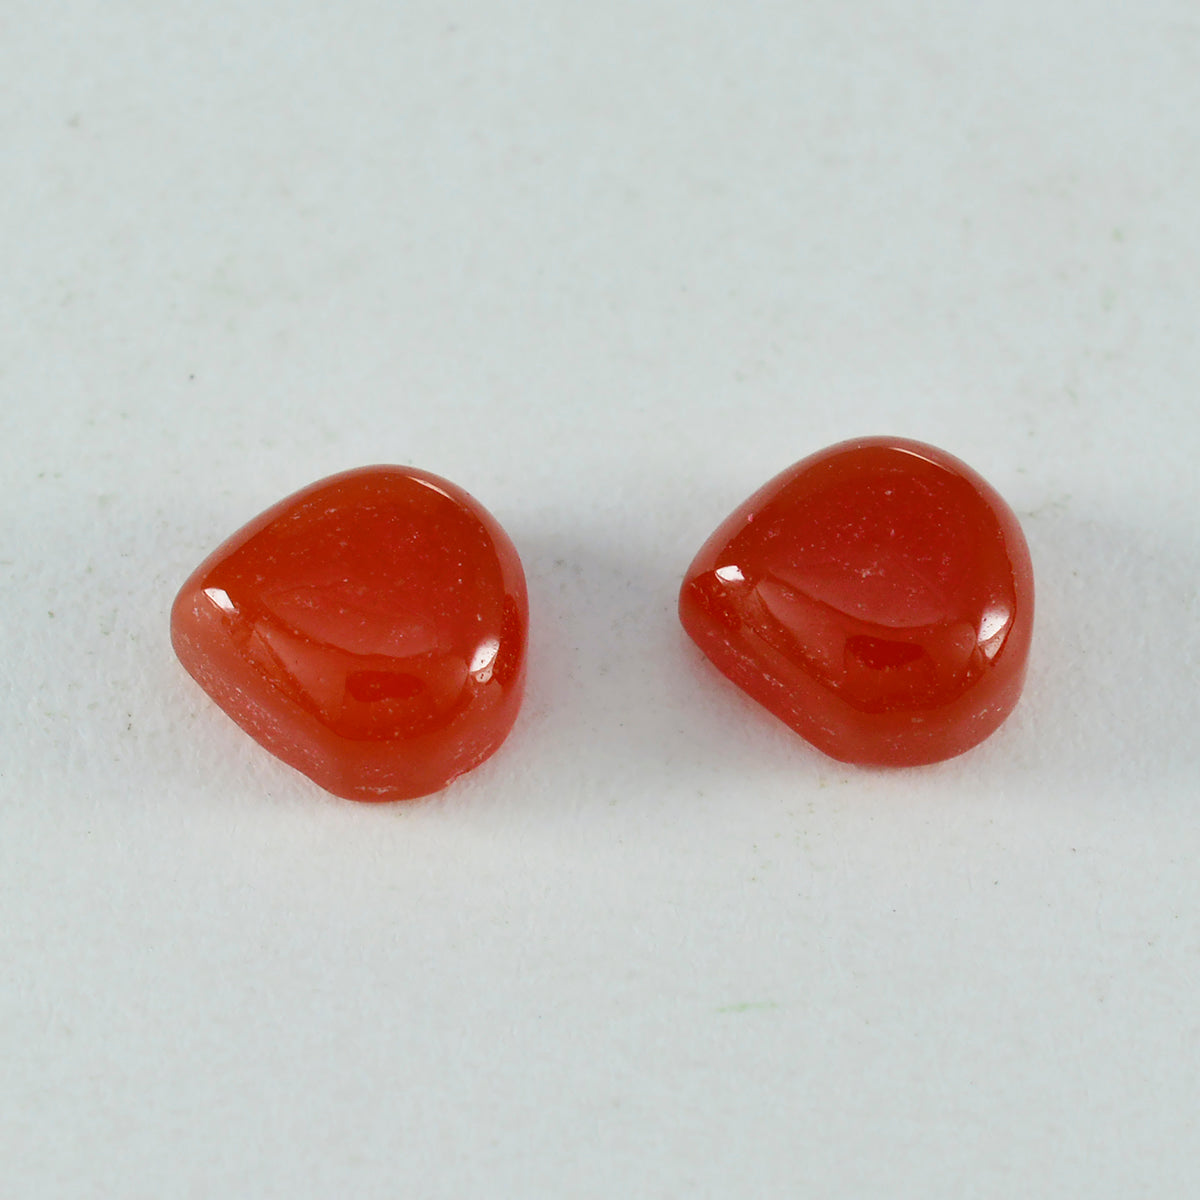 riyogems 1 шт. красный оникс кабошон 13x13 мм в форме сердца удивительного качества, свободный драгоценный камень